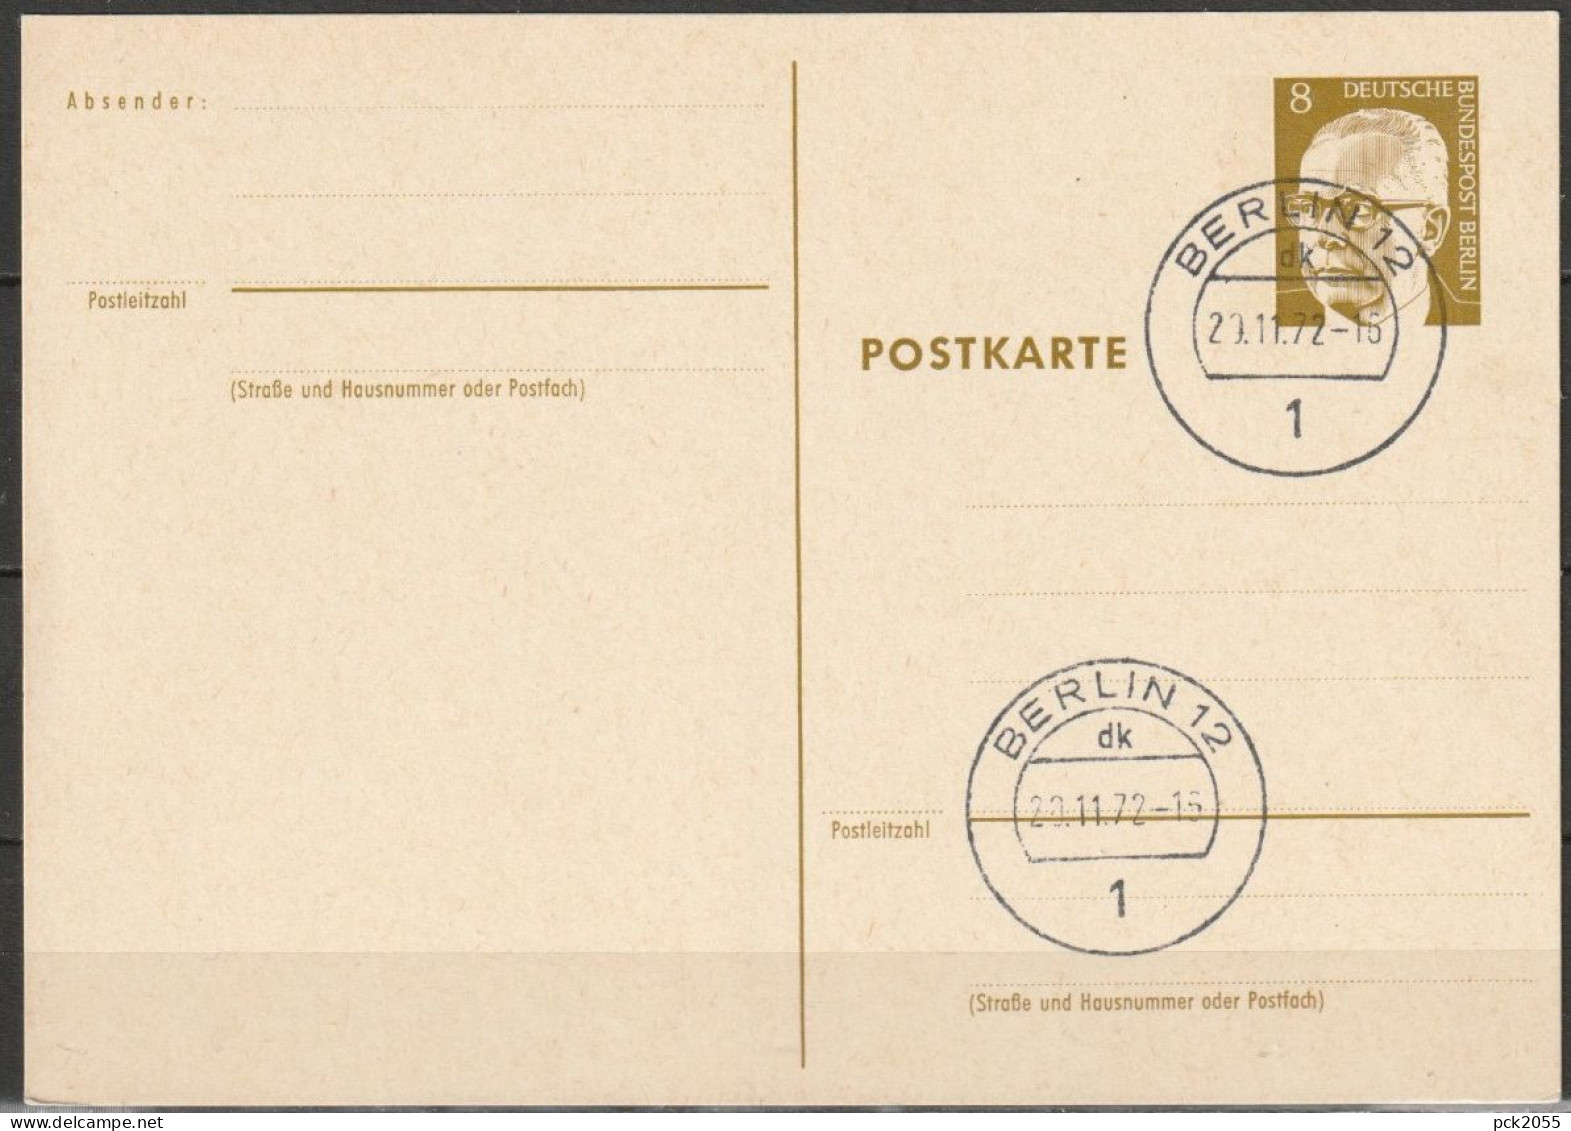 Berlin Ganzsache 1971/72 Mi.-Nr. P 80 Tagesstempel BERLIN 20.11.72  ( PK 207 ) - Postkaarten - Gebruikt